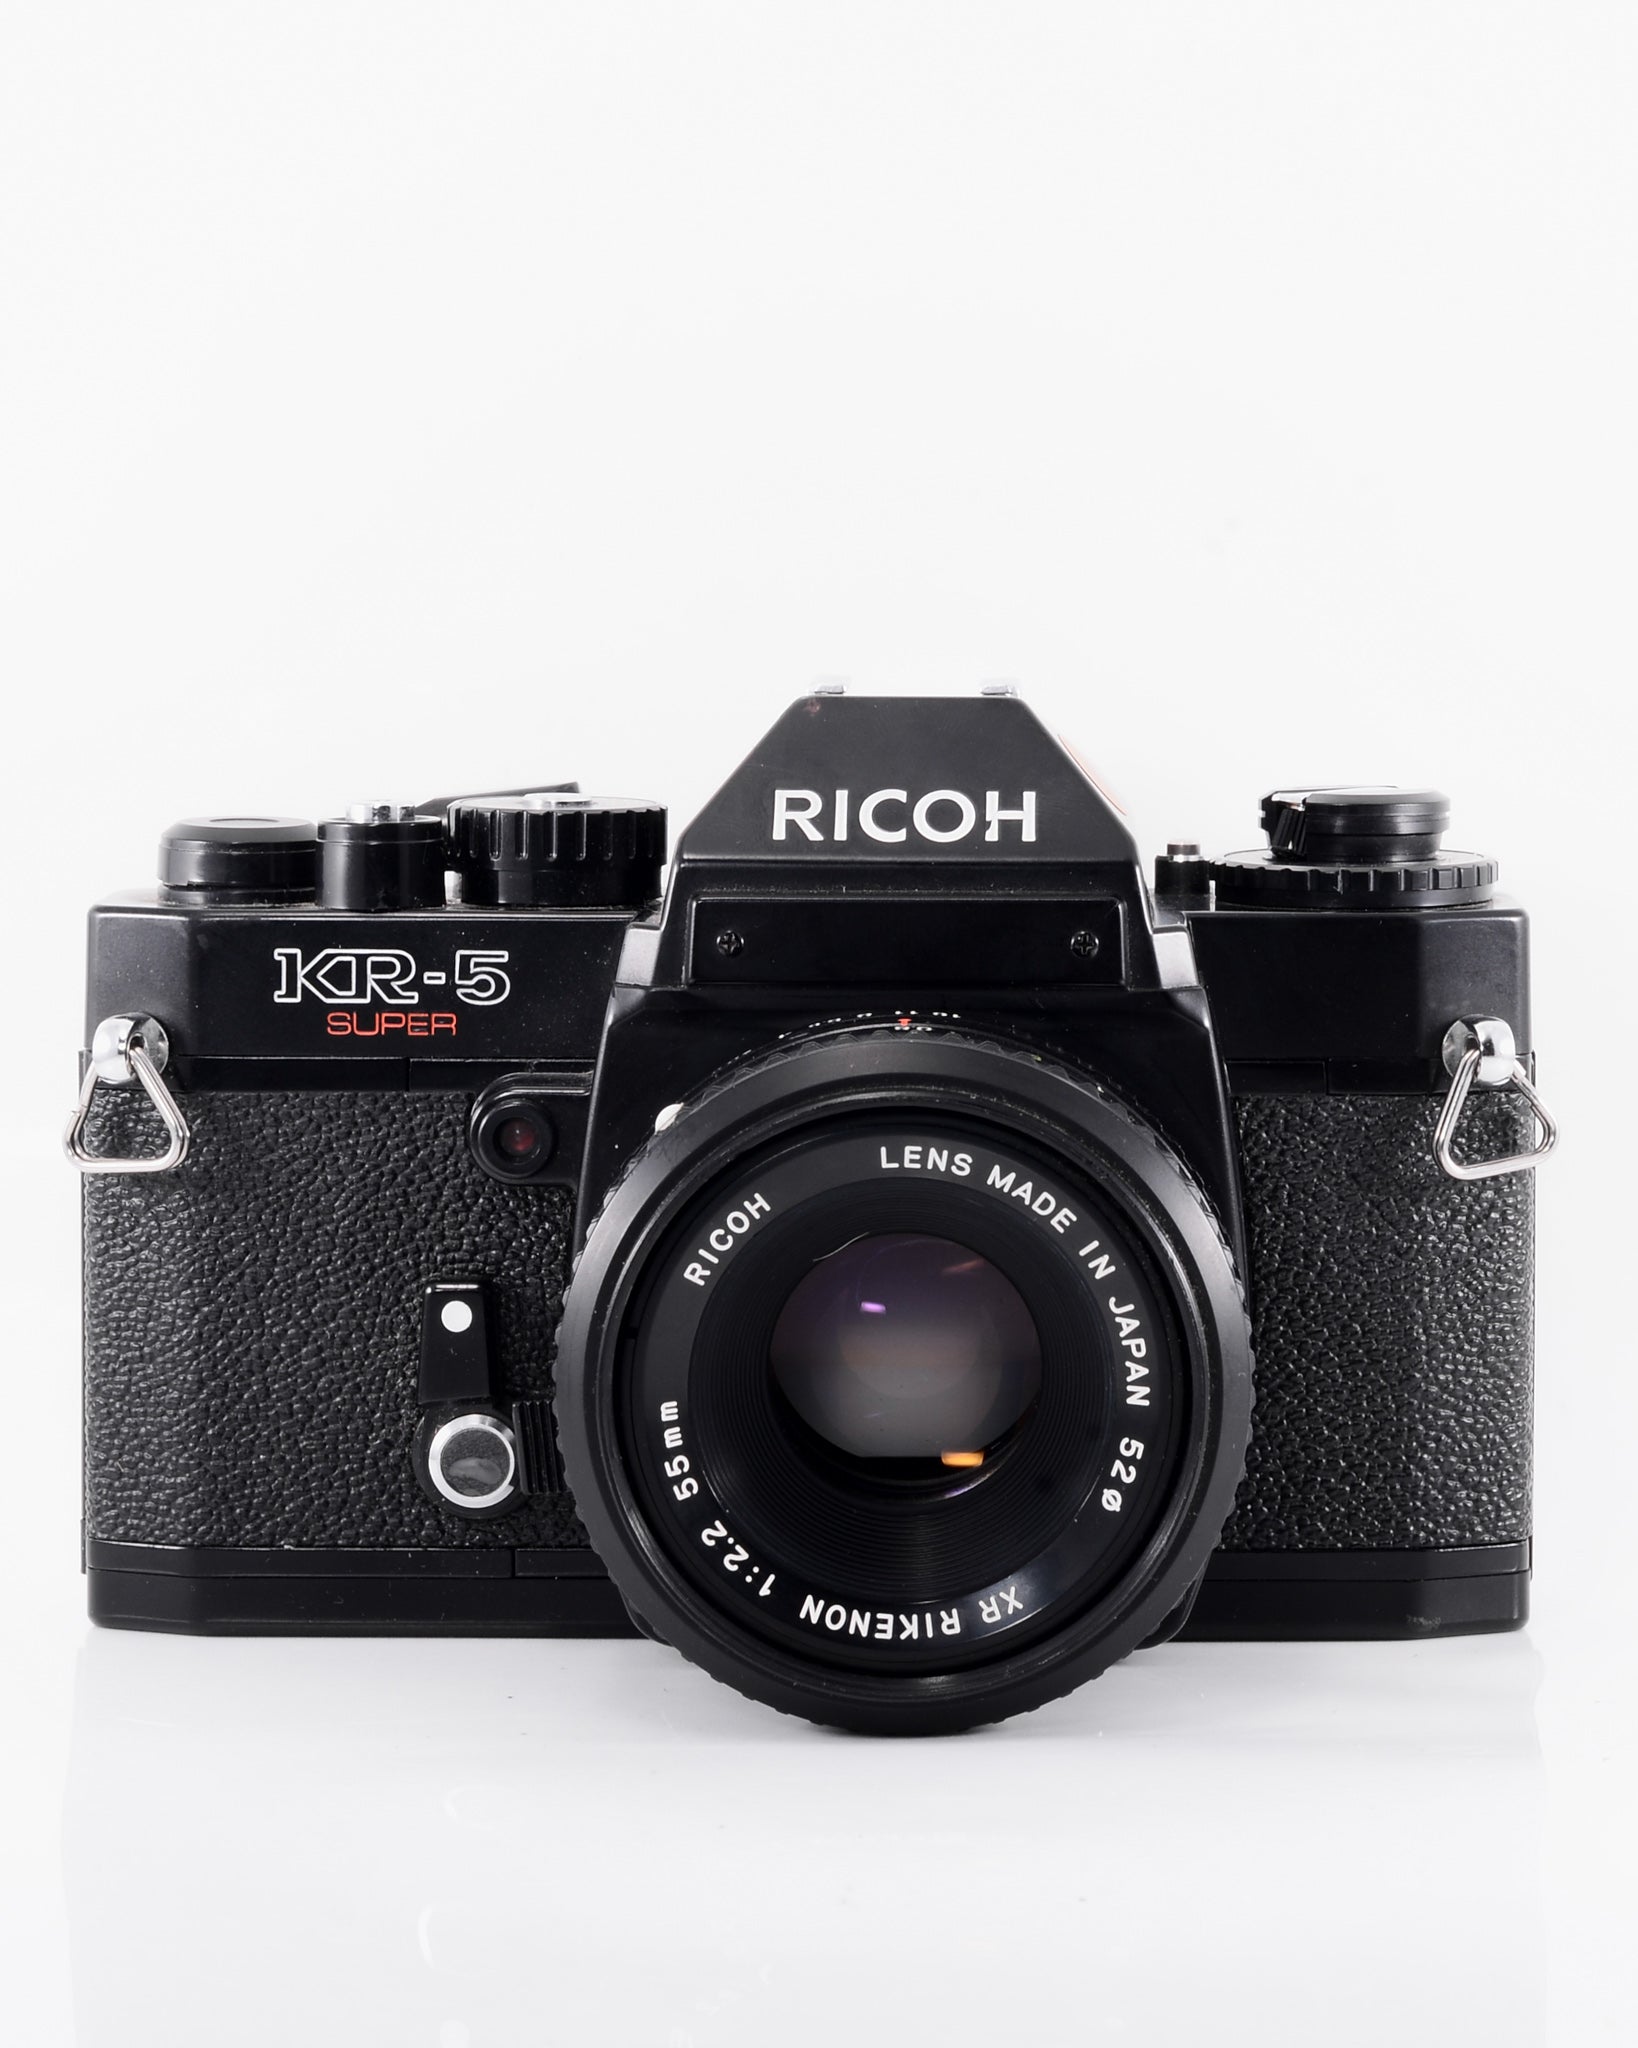 Ricoh KR-5 Super 35mm SLR film camera with 55mm f2.2 lens